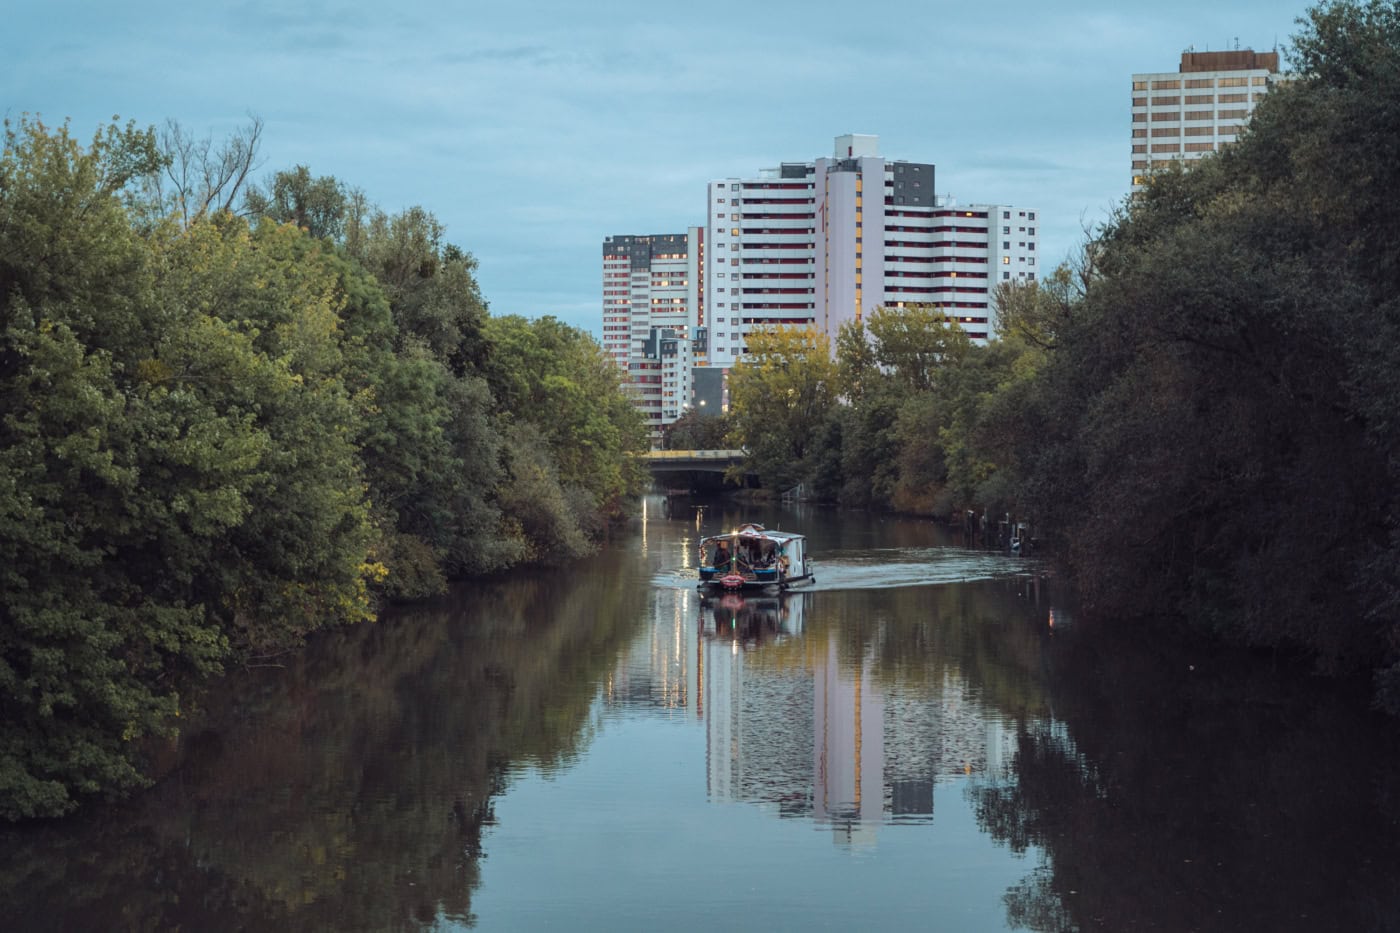 Auf einem ruhigen Fluss, umsäumt von grünen Bäumen ist ein Hausboot zu sehen, das in Richtung des Betrachtenden schwimmt. Im Hintergrund ragt das hannoveraner Hochhaus Ihmezentrum empor.